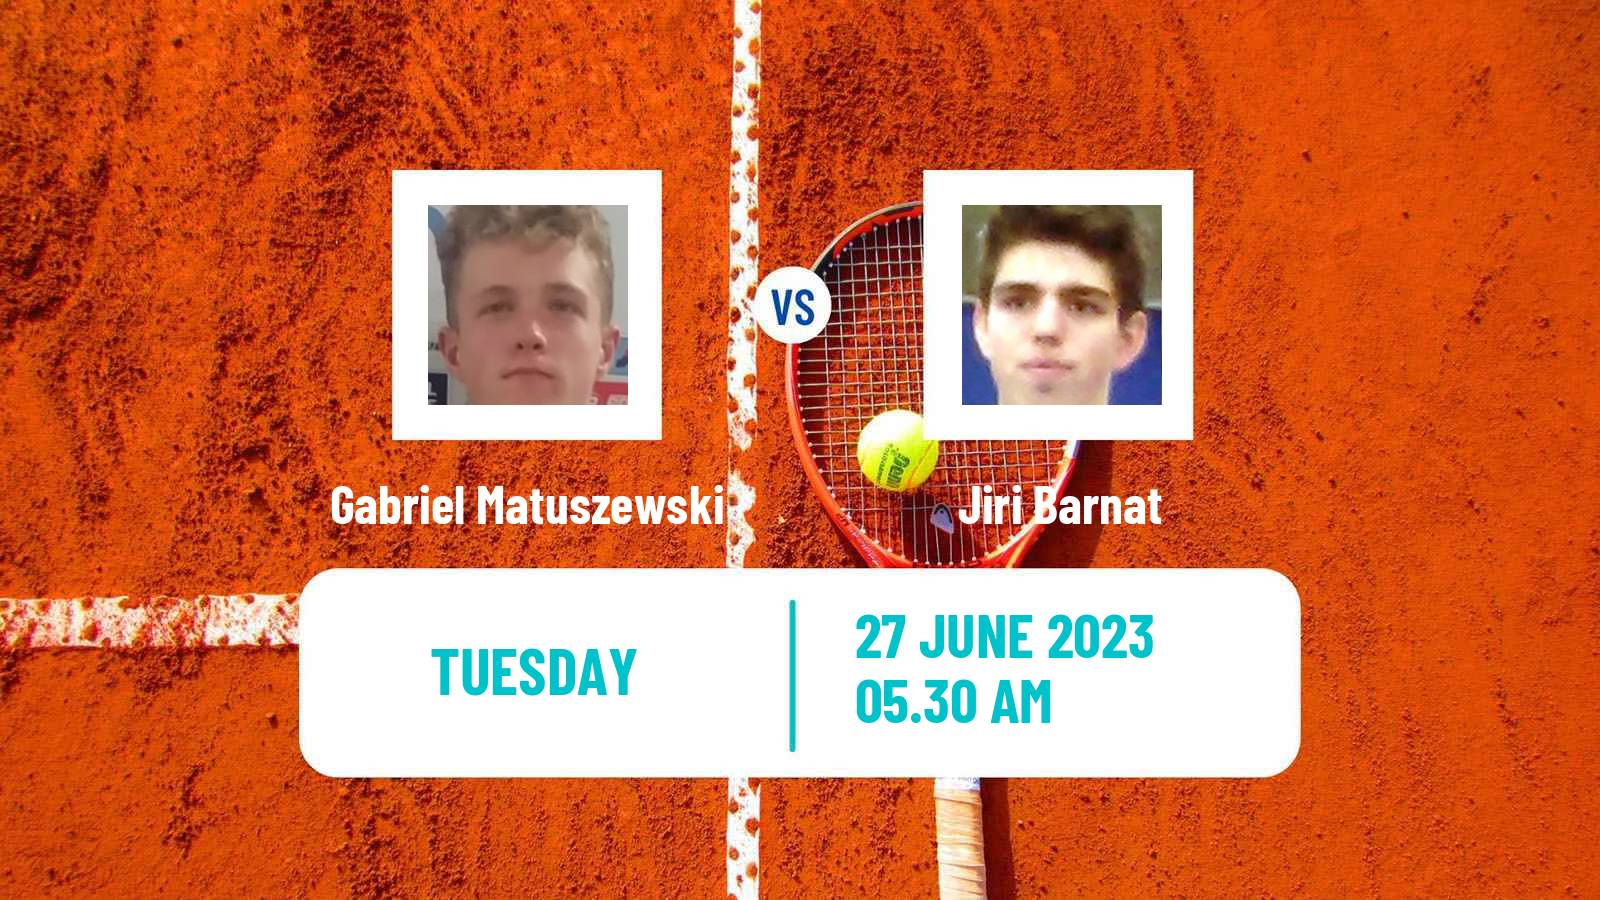 Tennis ITF M15 Wroclaw Men Gabriel Matuszewski - Jiri Barnat